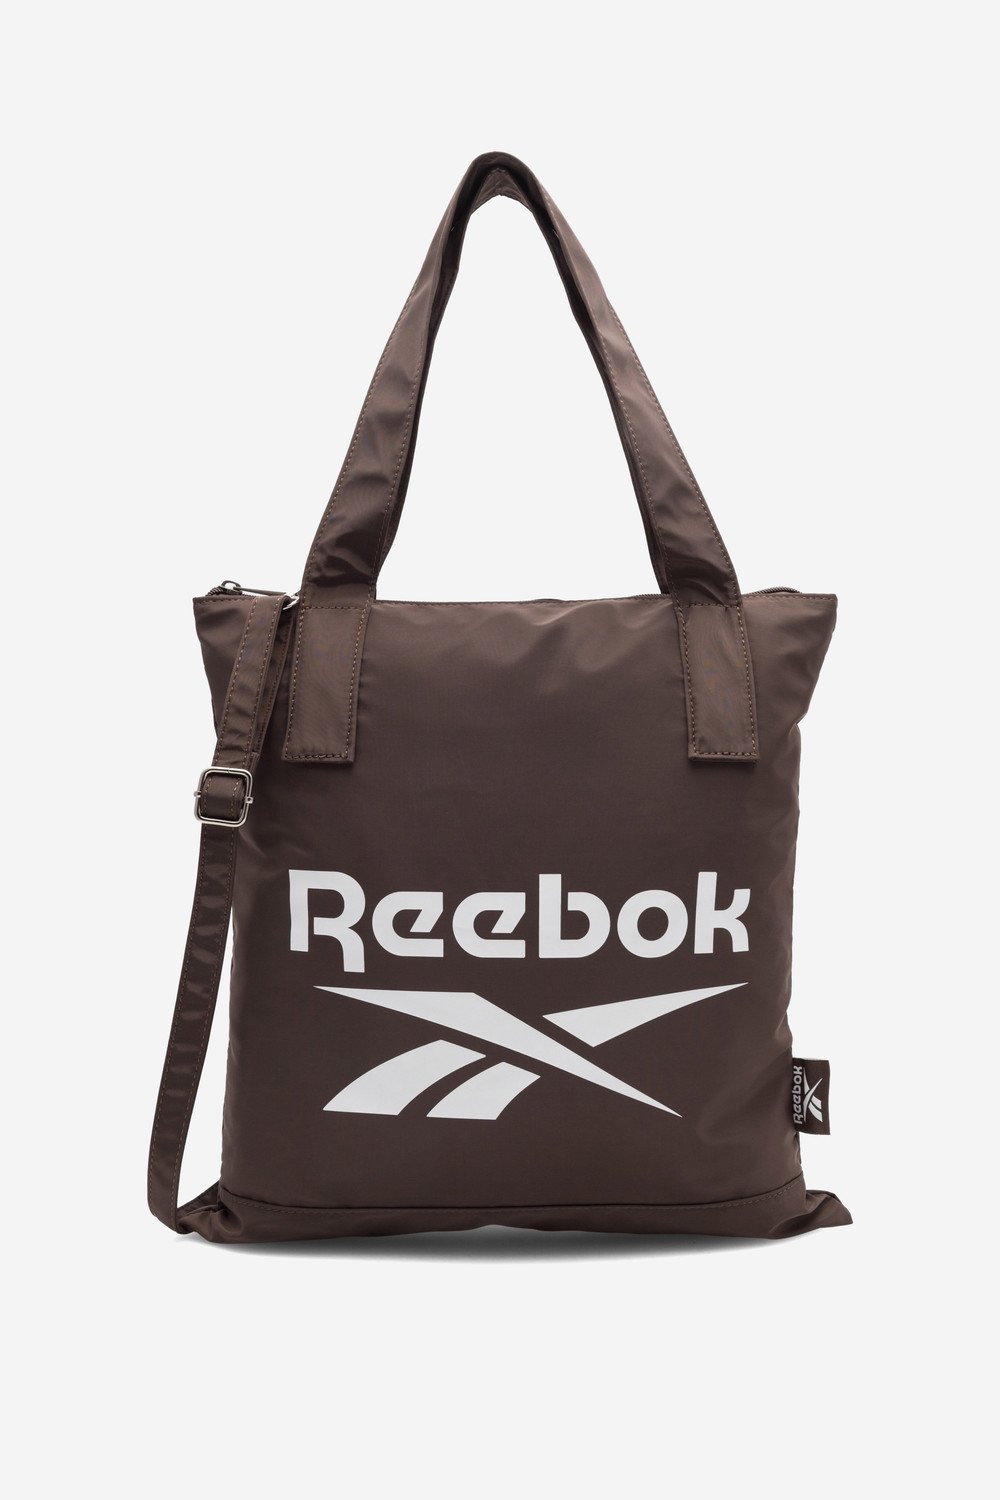 Dámské kabelky Reebok RBK-S-016-CCC